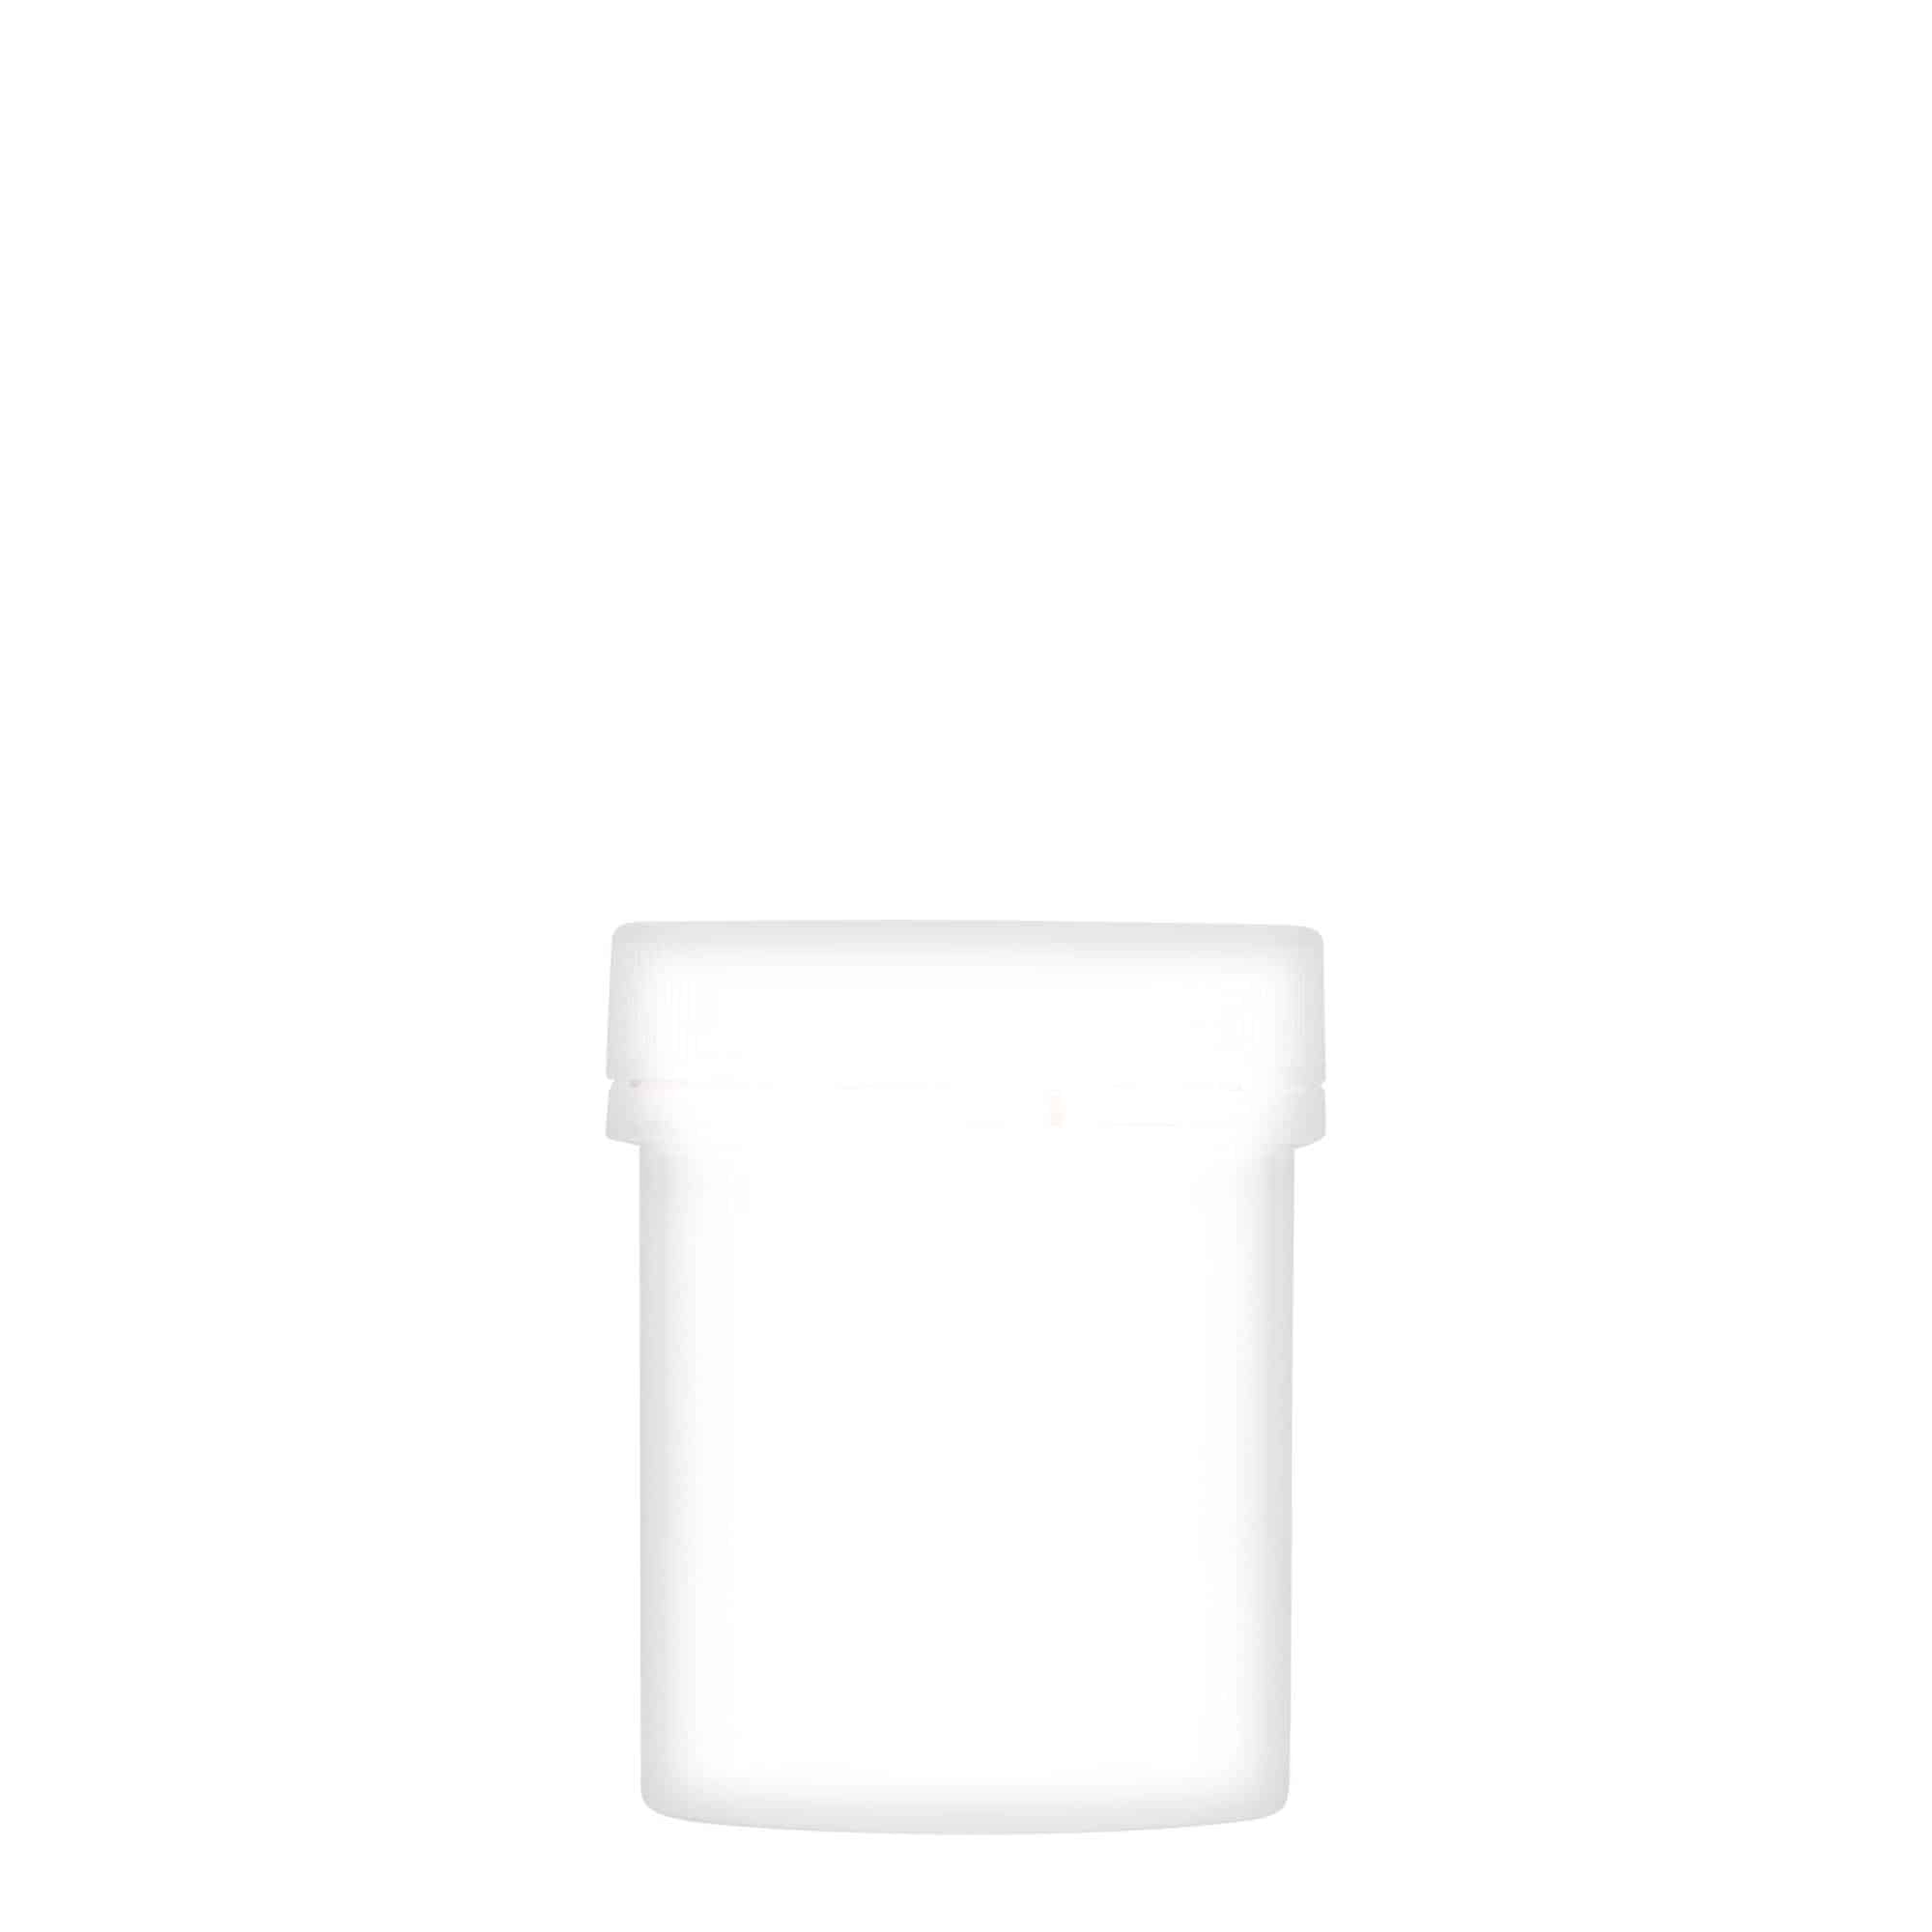 150 ml plastic jar 'Securilock', PP, white, closure: screw cap